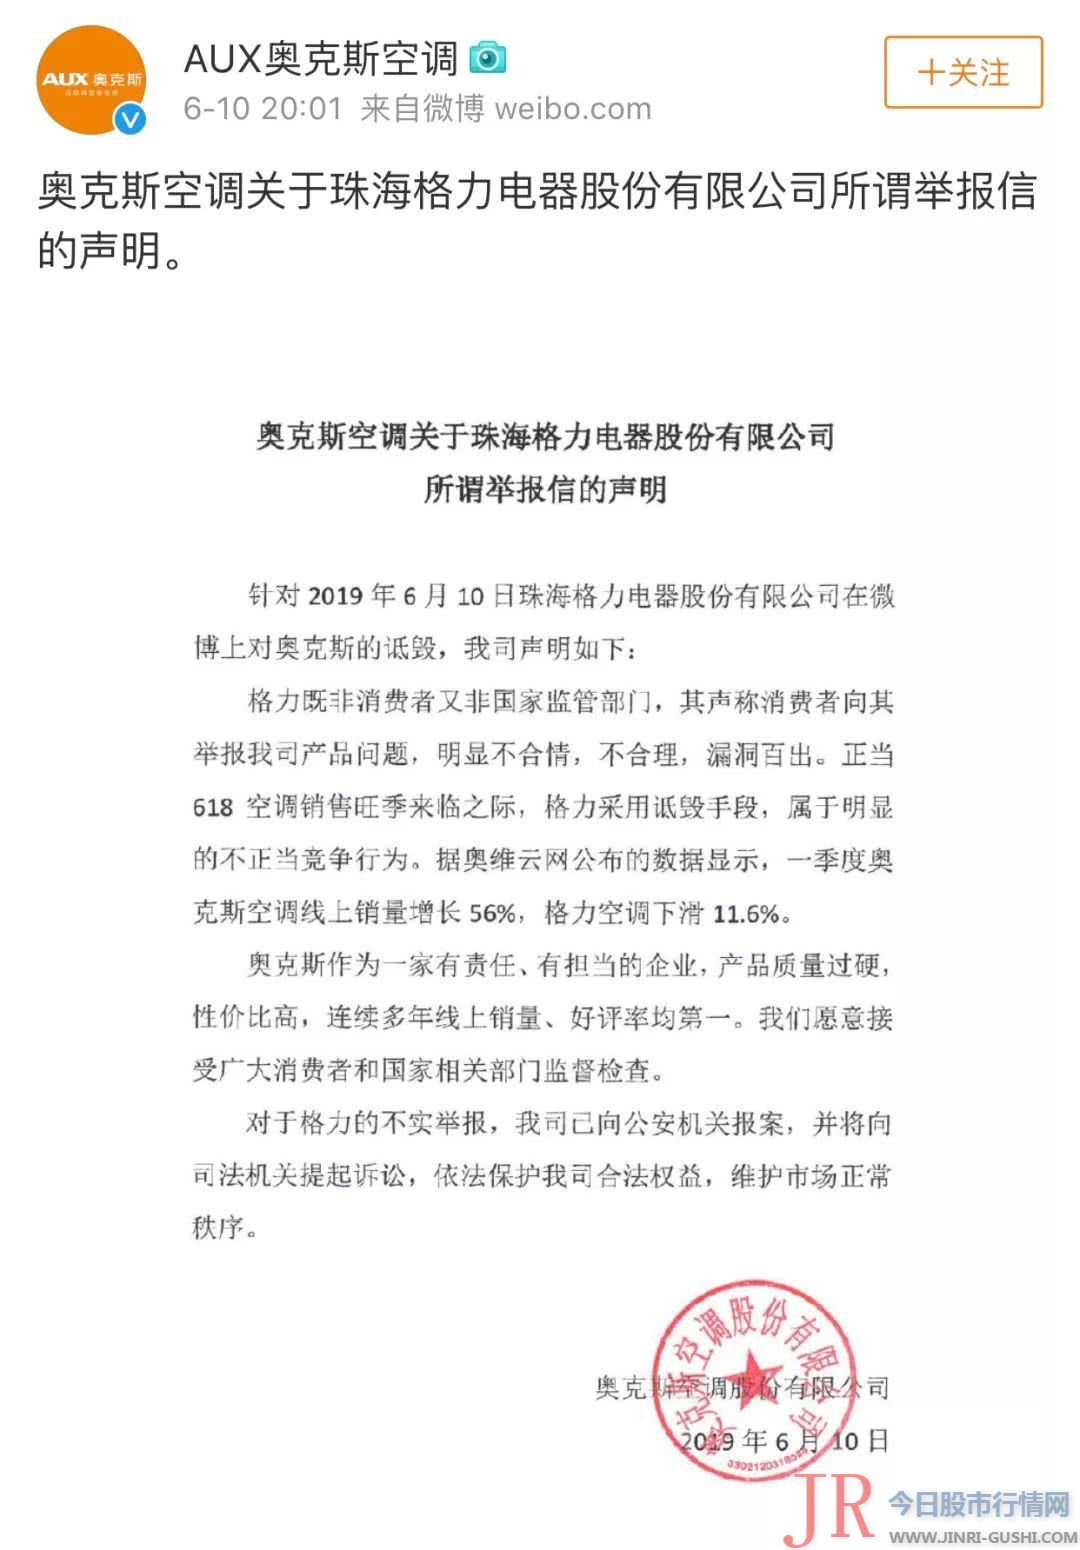 已经通知浙江省市场监视打点局对有关状况尽快停止调考核实